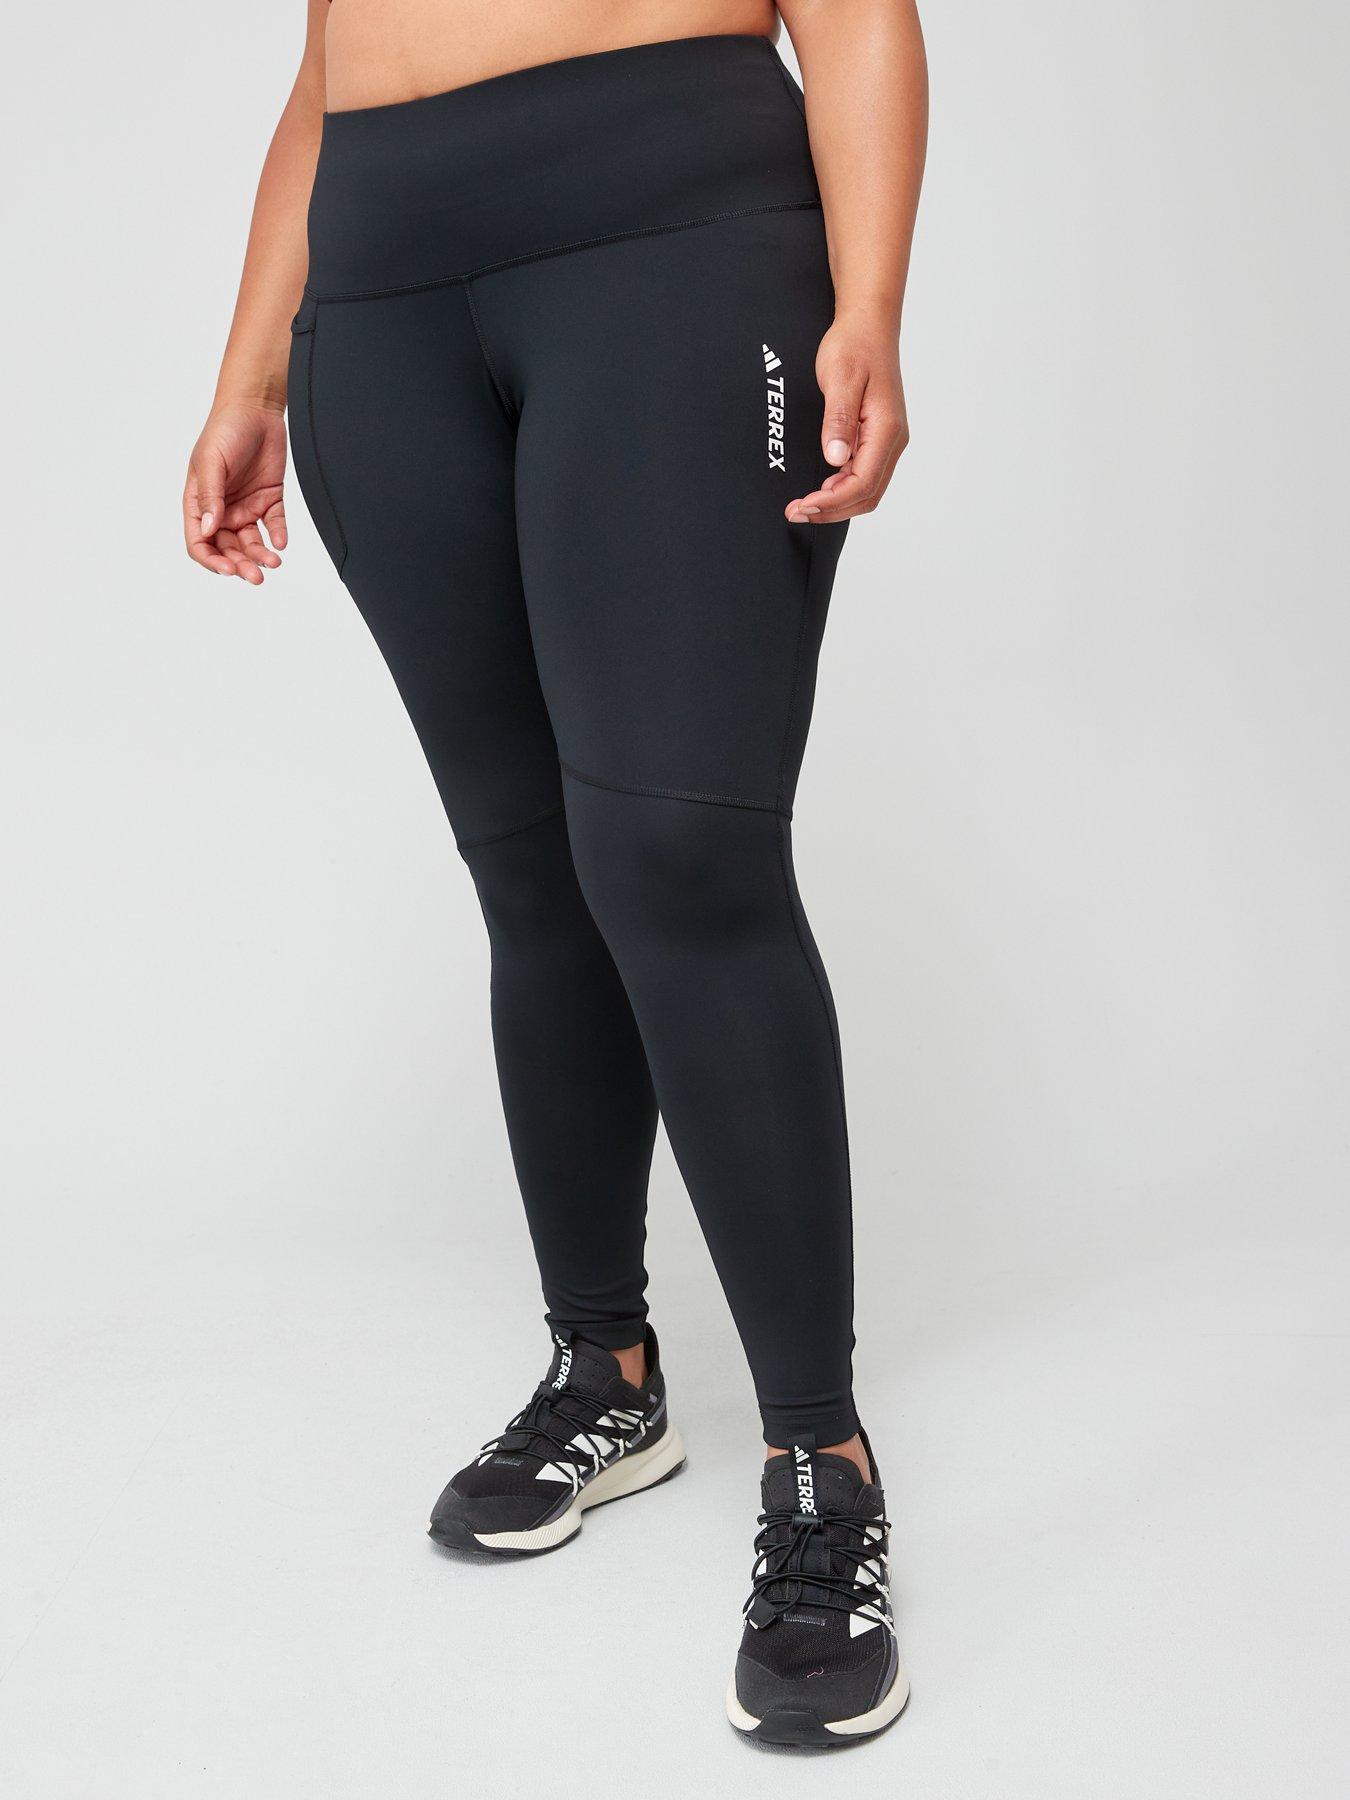 adidas Sportswear Women's Sportswear Maternity Leggings - Black/White